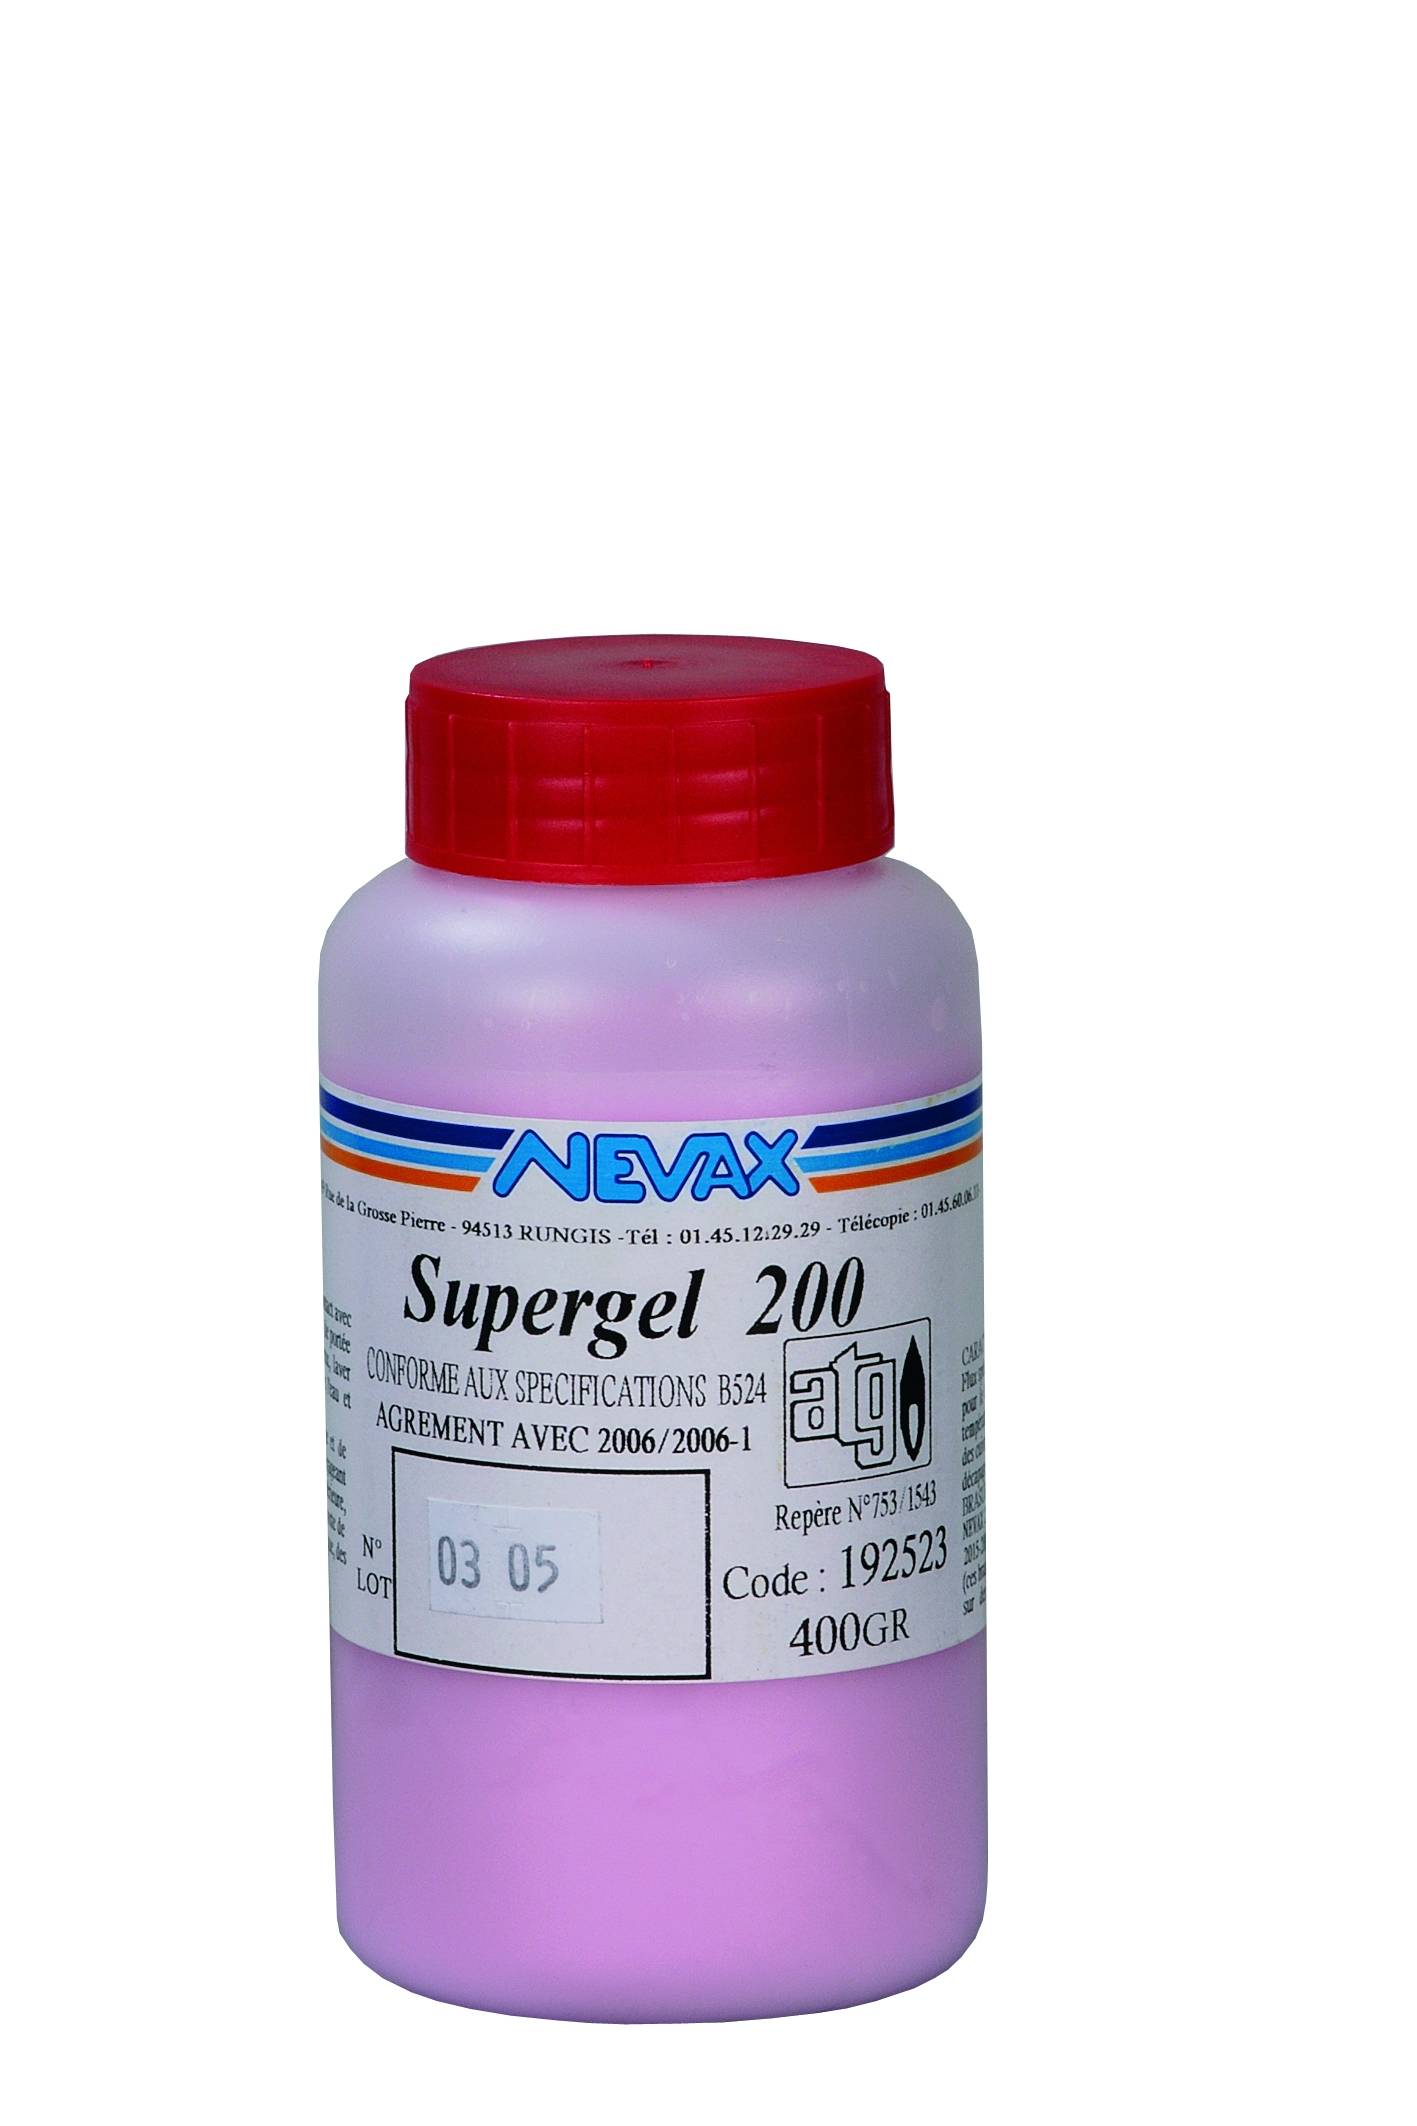 Supergel 200 gel : tarro de 200g